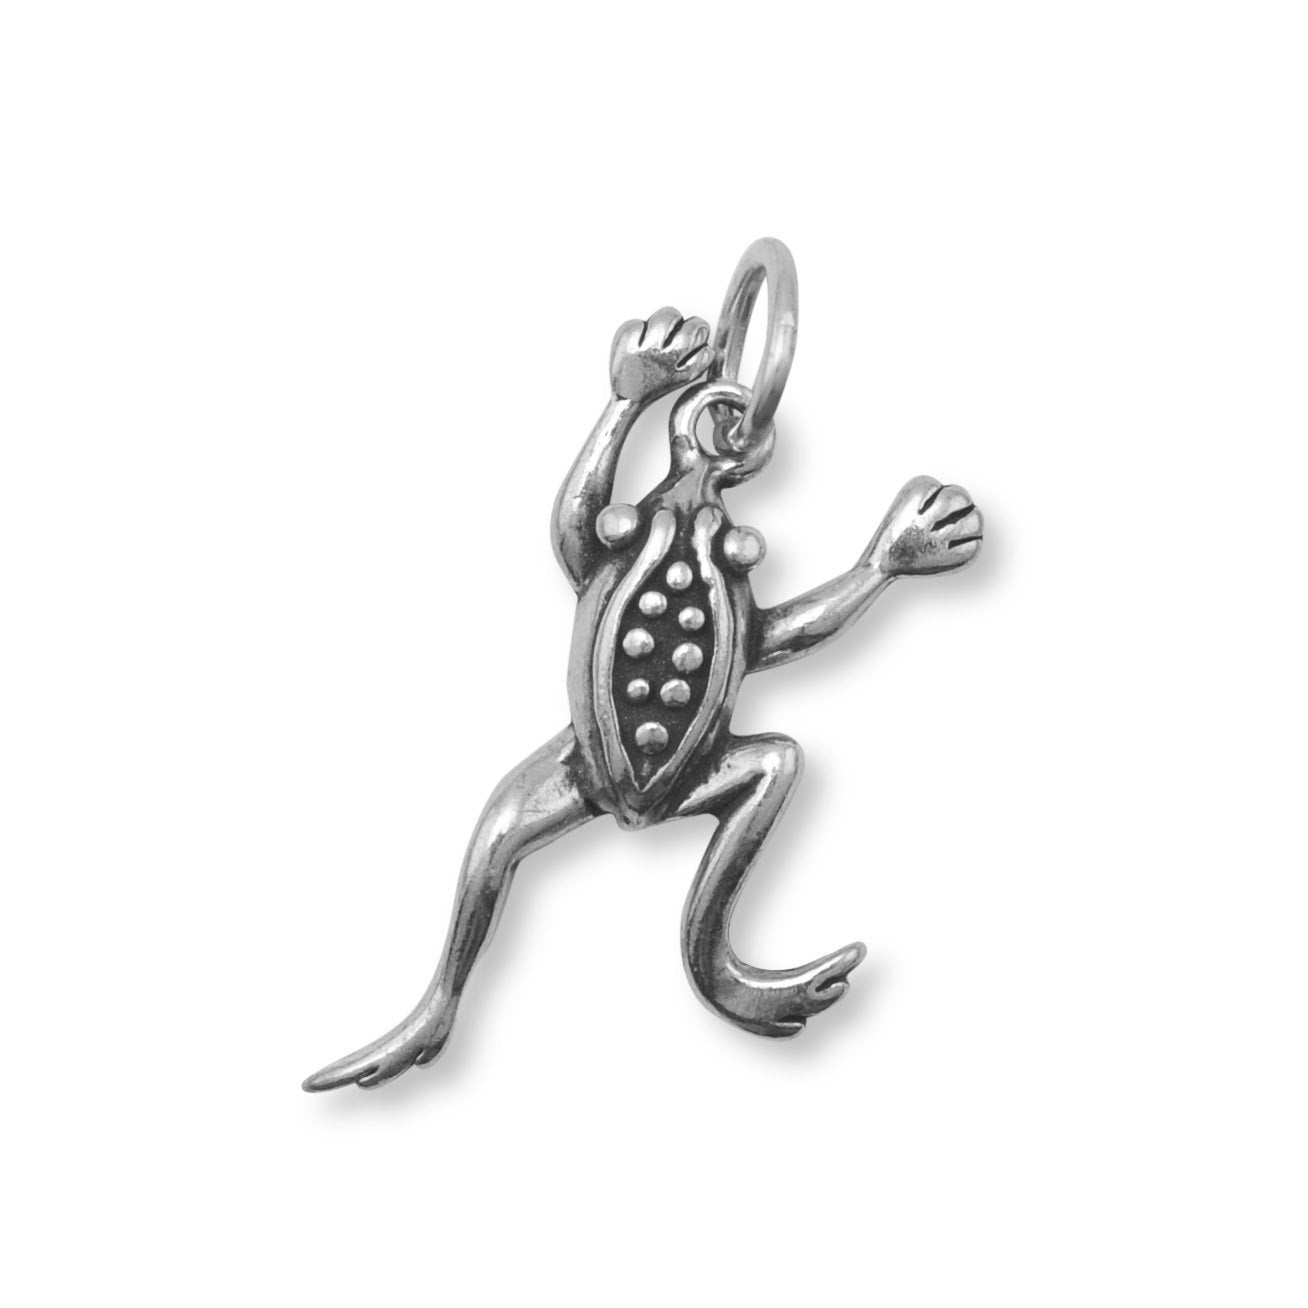 Oxidized Leaping Frog Charm - Joyeria Lady